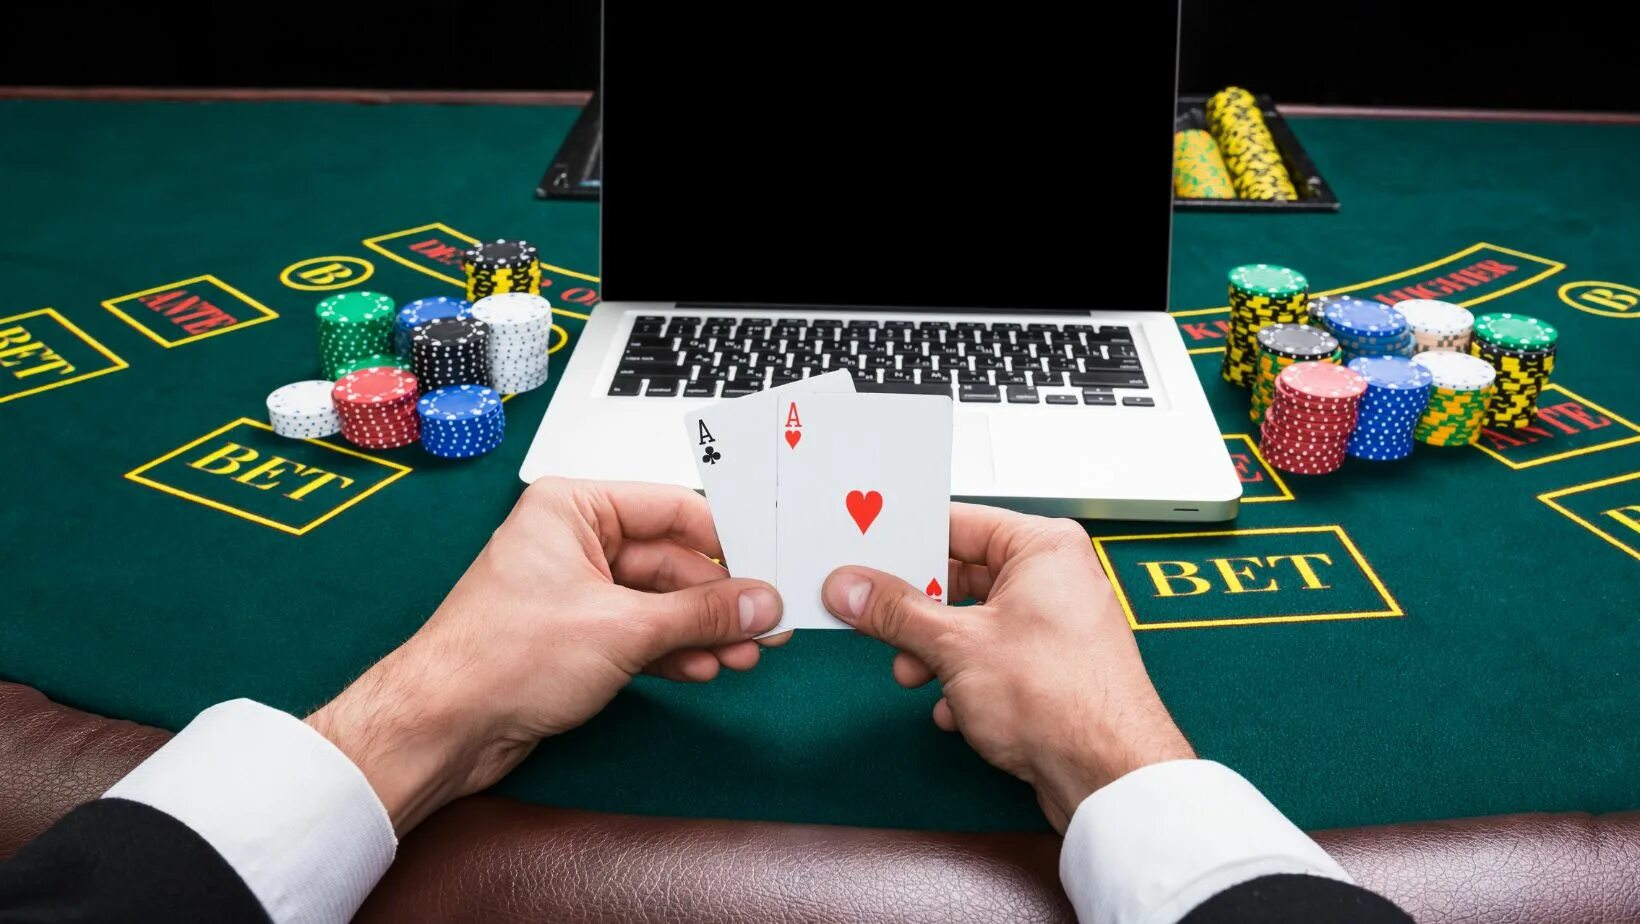 Азартные игры azart games space. Покер. Азартные игры Покер казино. Карточные игры интернет казино азартные. Азарт игры.